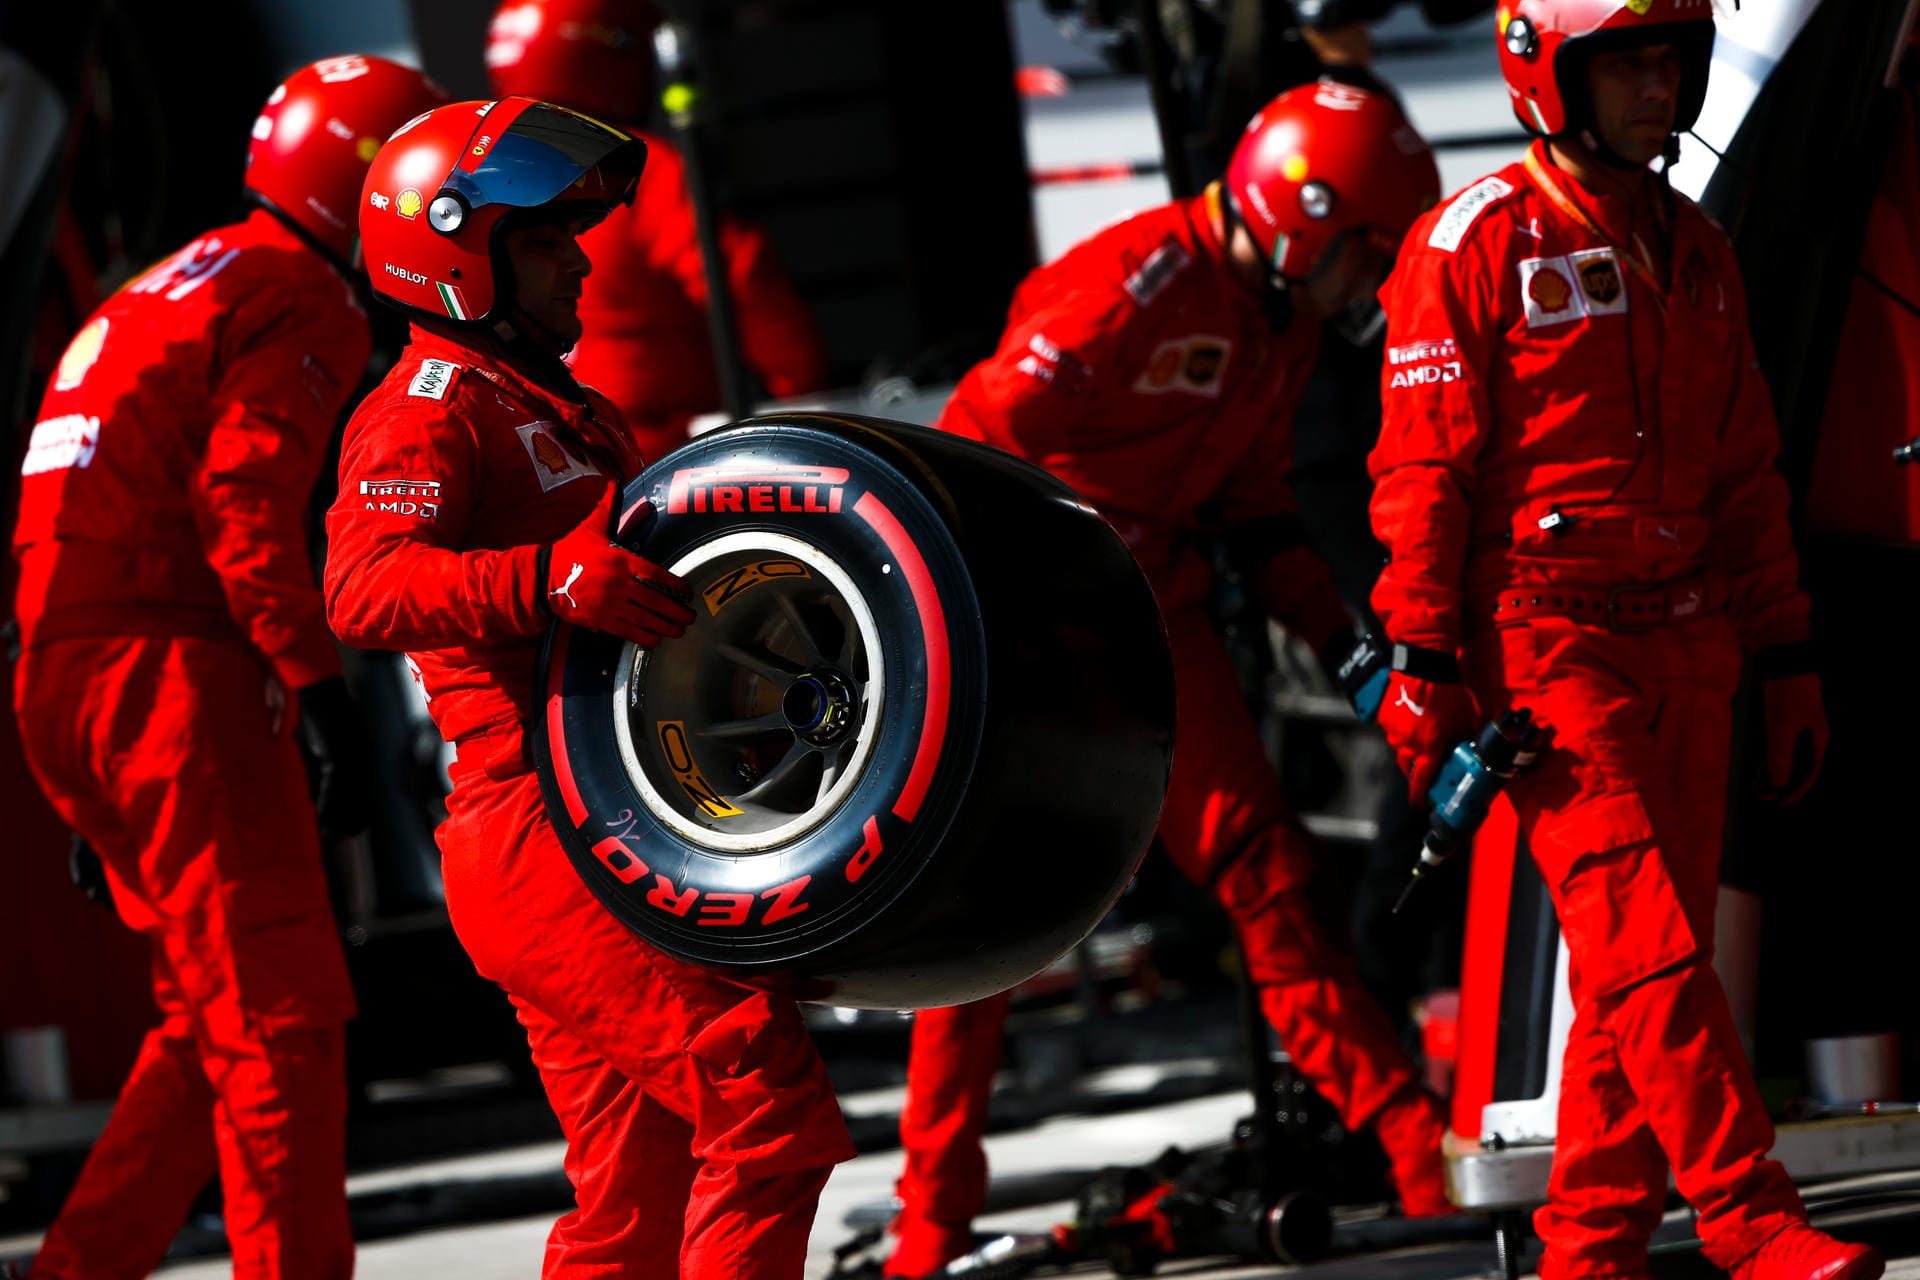 "Blick" (Schweiz): "Das Ferrari-Duo schießt sich ab, 22 WM-Punkte für Alfa-Sauber. Was für ein Ferrari-Drama in Sao Paulo! Der Super-Knall ereignet sich in Runde 66 von 71. An den Ferrari-Boxen bricht Chef Binotto zusammen."